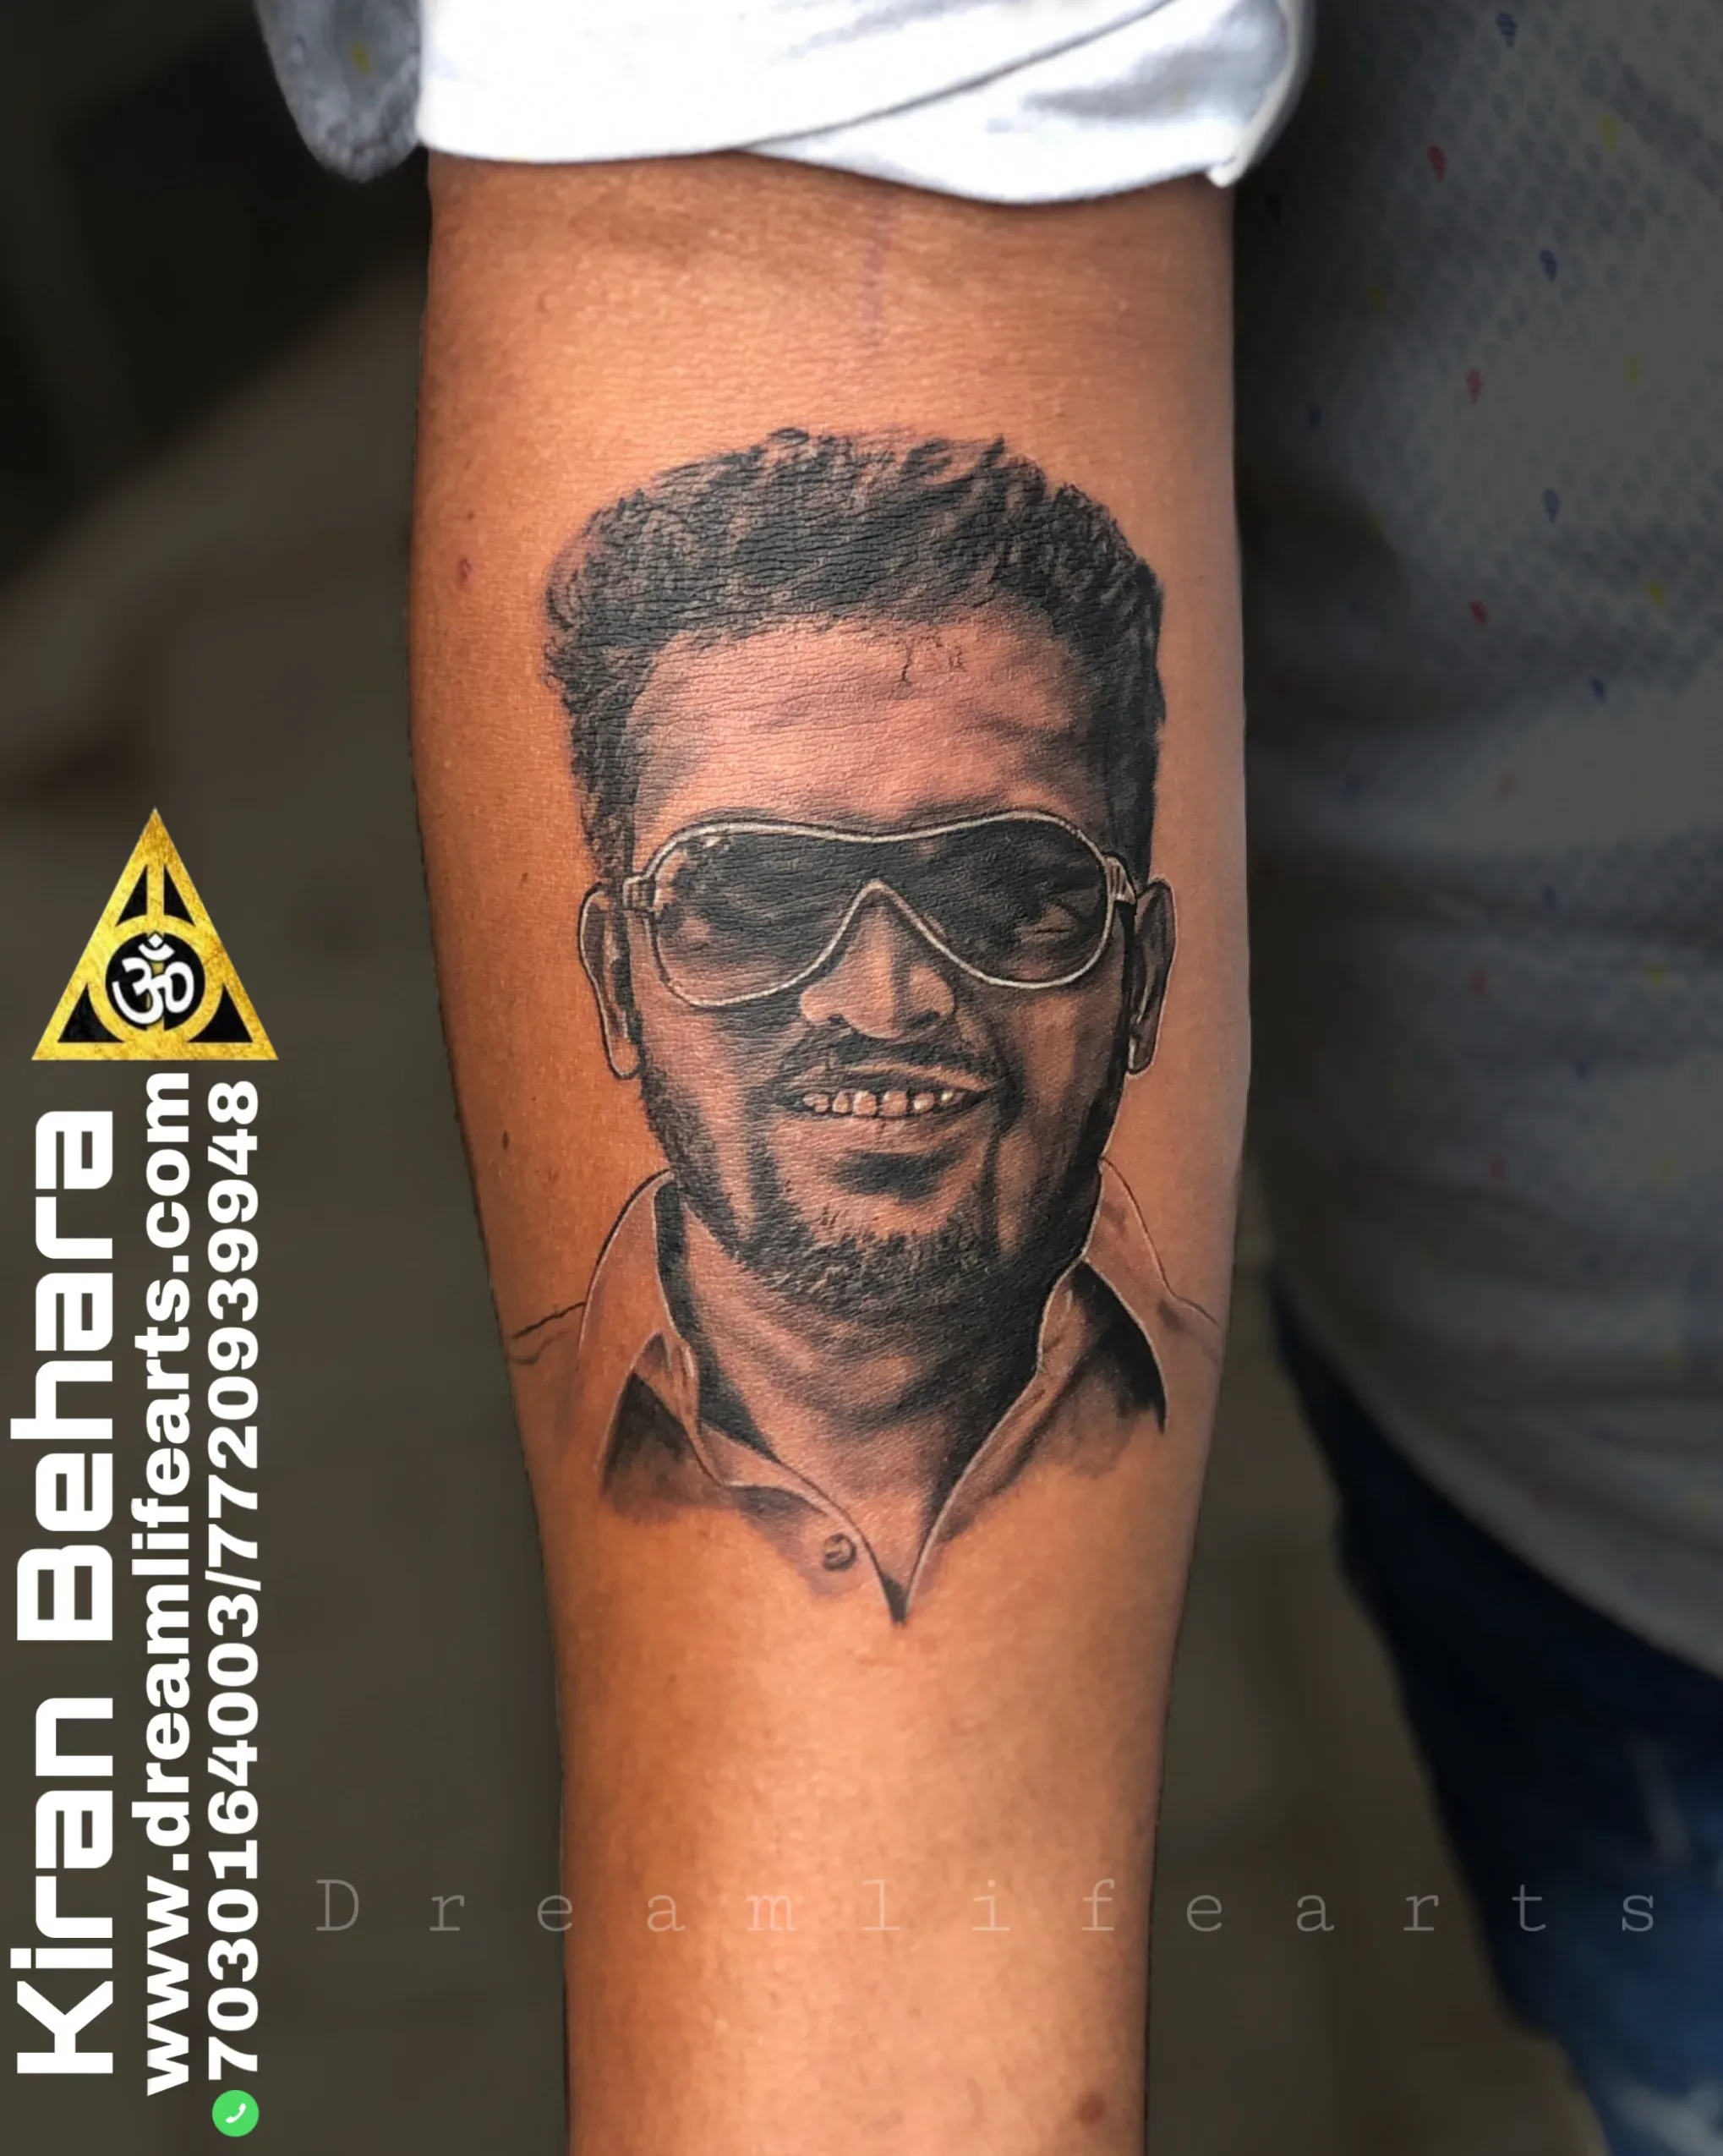 Amit Chauhan - born for tattoo art - Vijay tattoo | LinkedIn